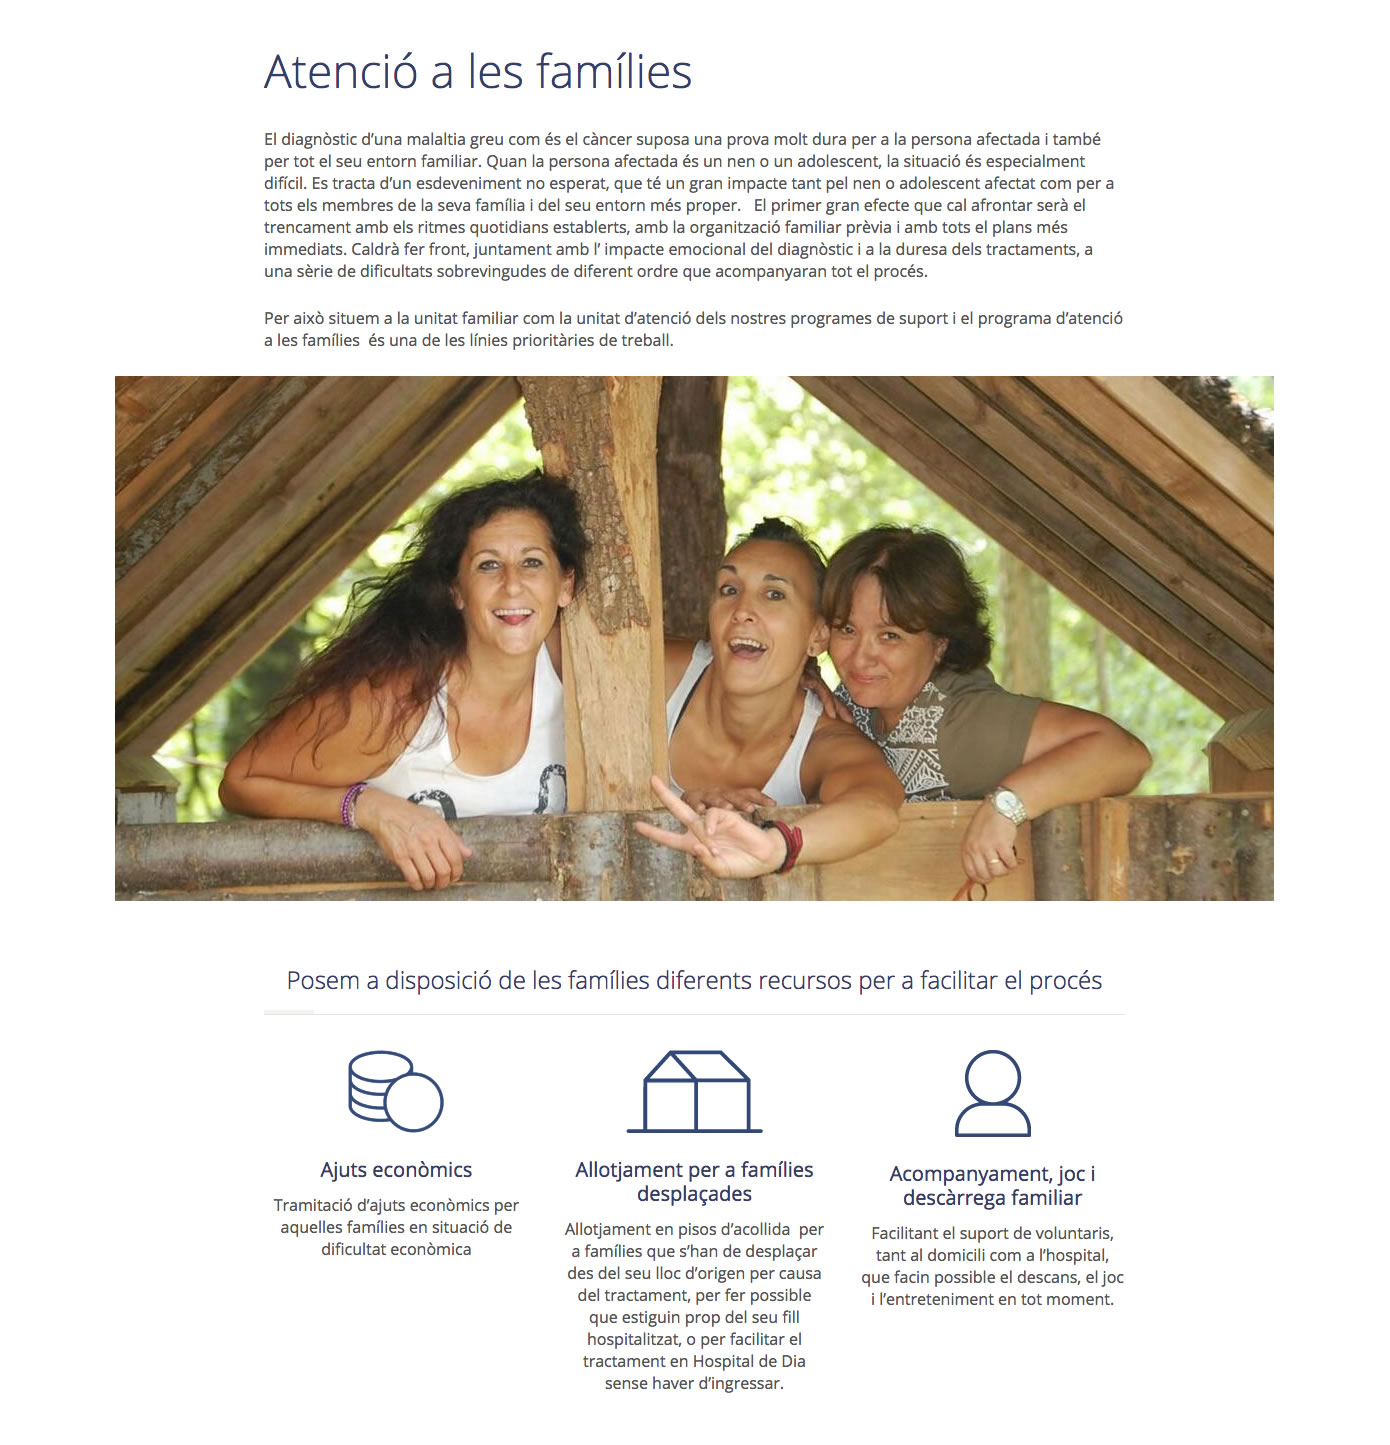 Fundació Enriqueta Villavecchia - Atenció a les famílies